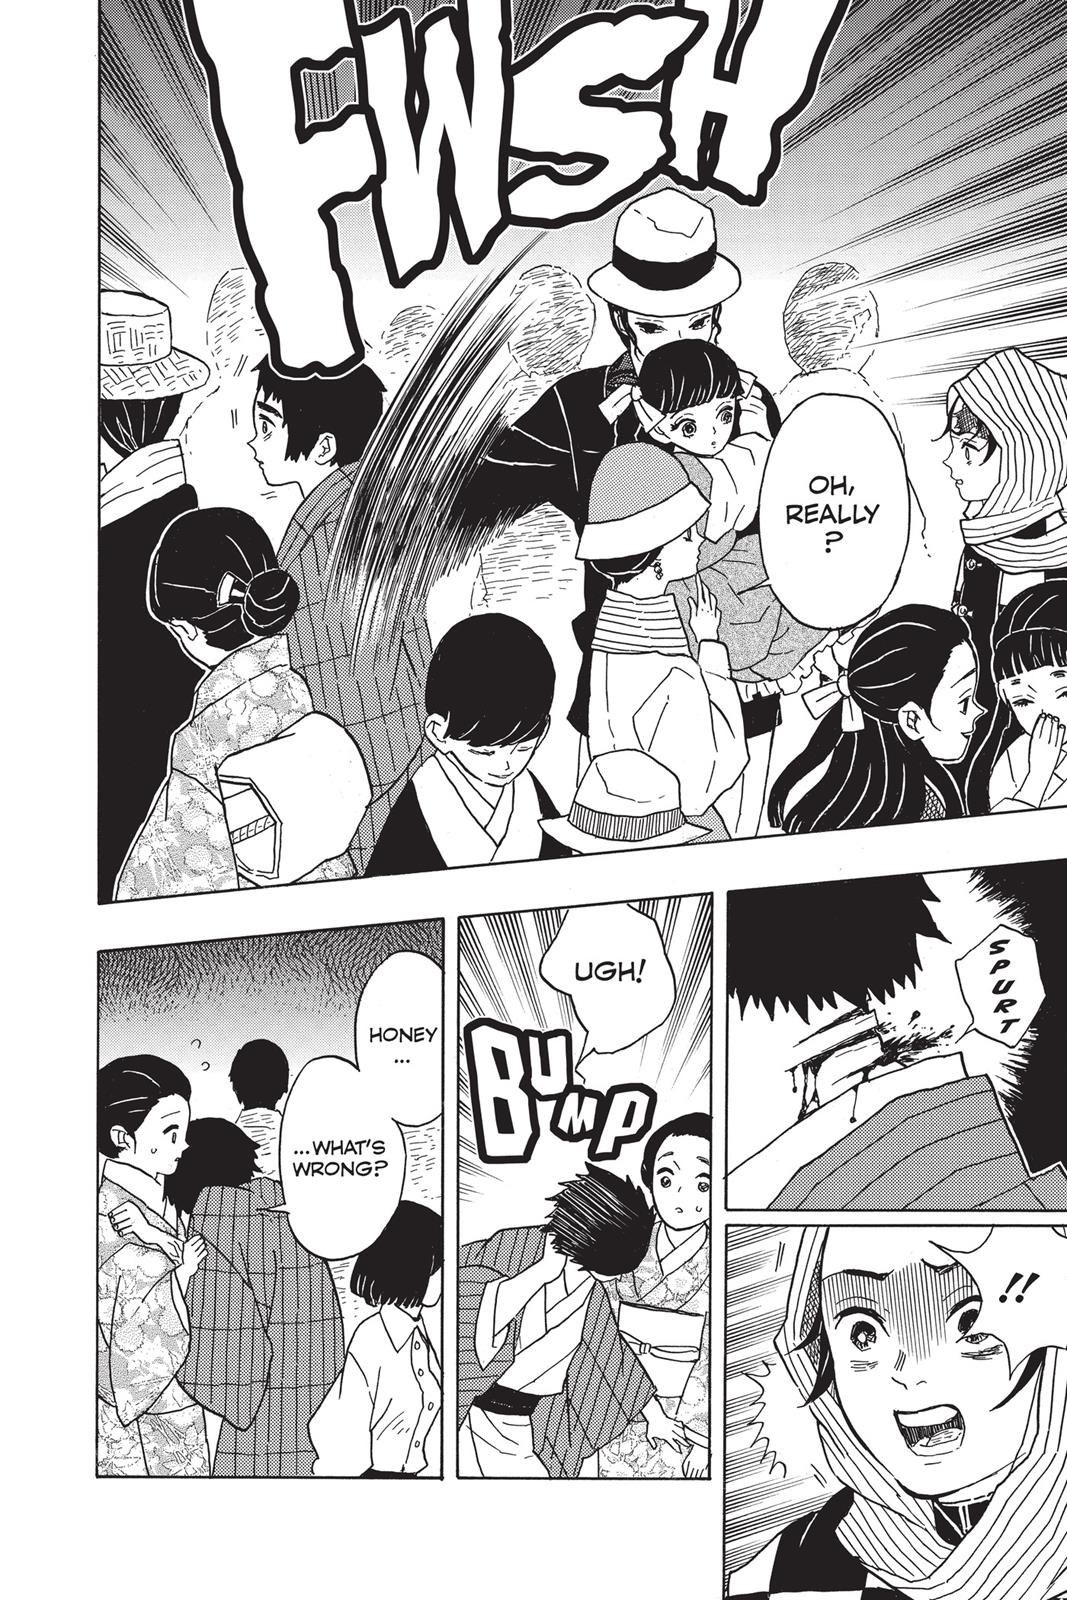 Demon Slayer Manga Manga Chapter - 13 - image 10